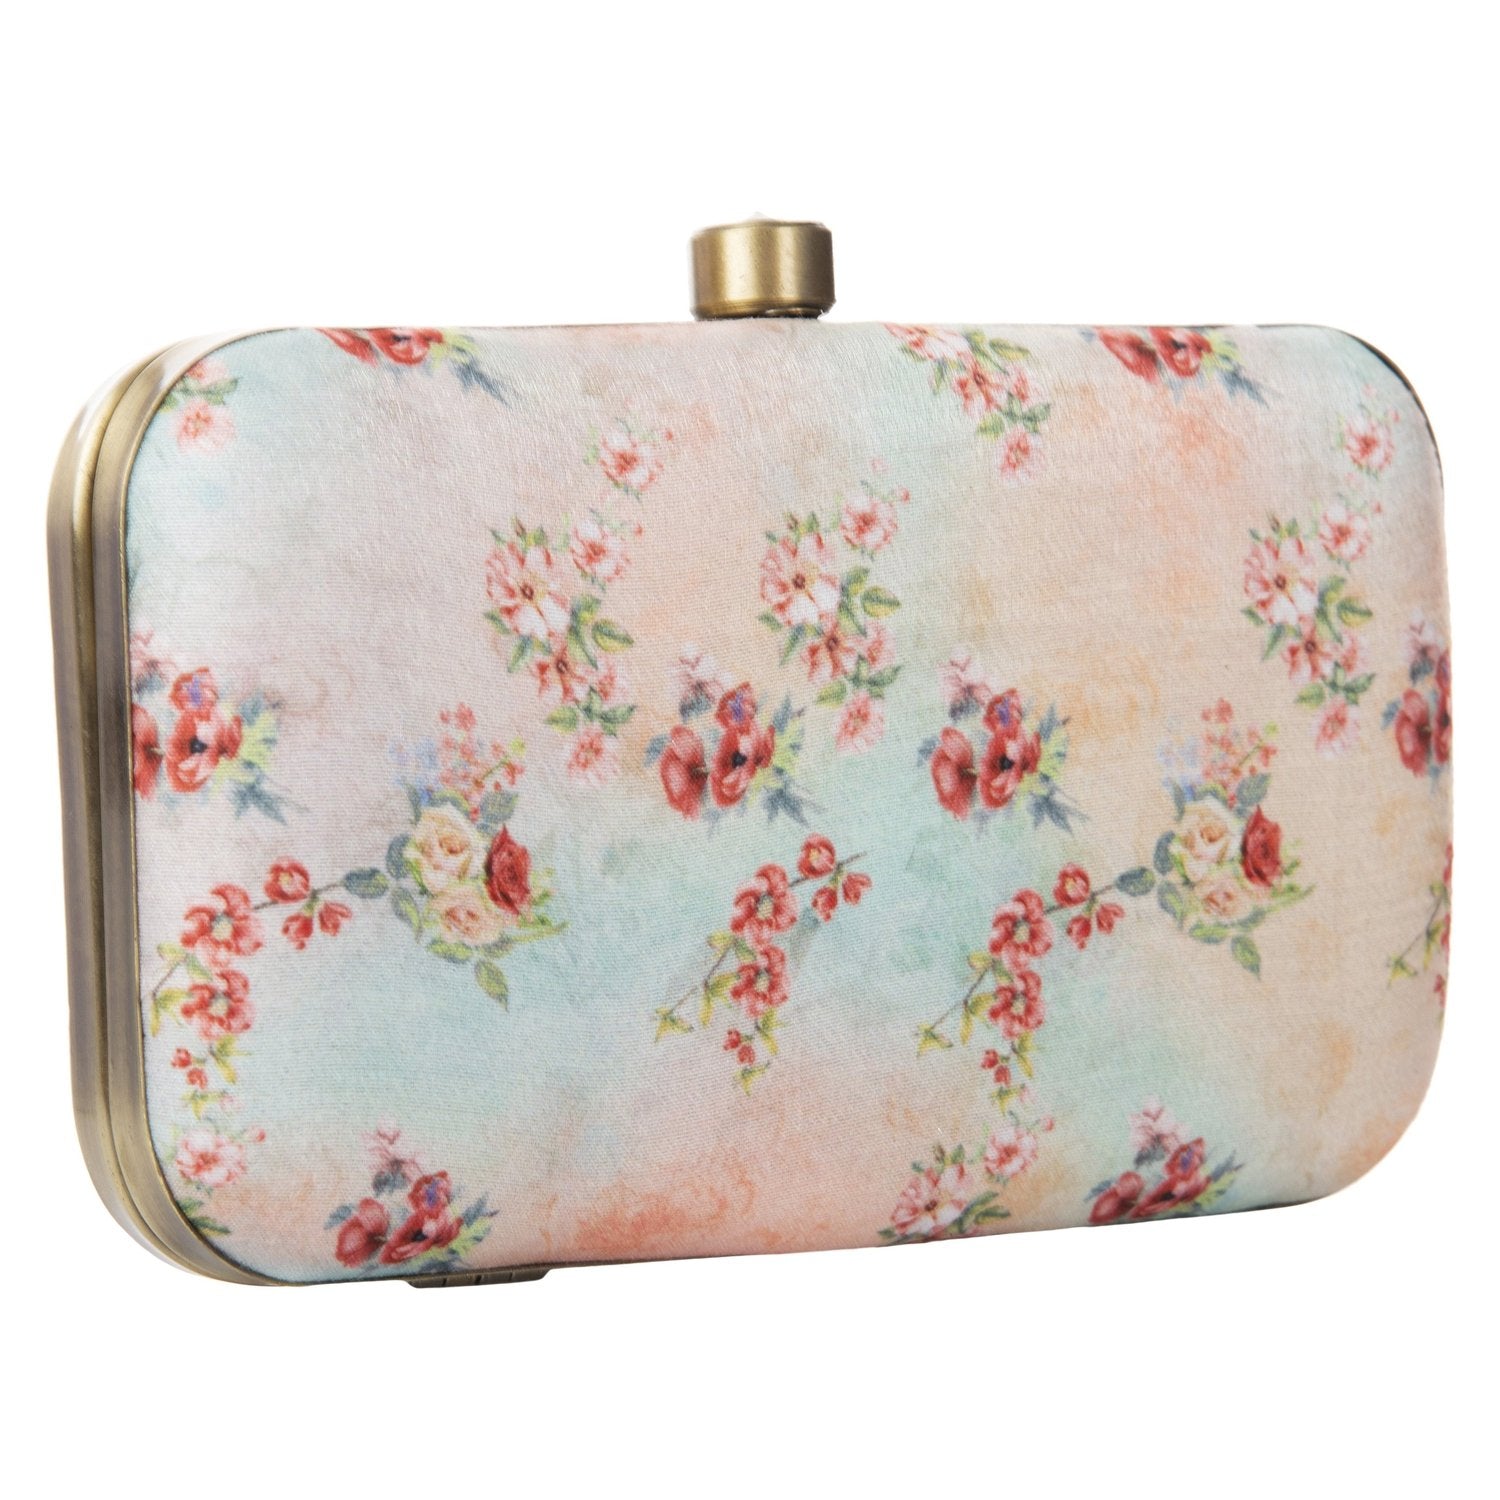 Fancy Ladies handbag|Attractive women handbag|Ladies fashionable handbag|Ladies  purse|Women designer handbag|Top handle handbags